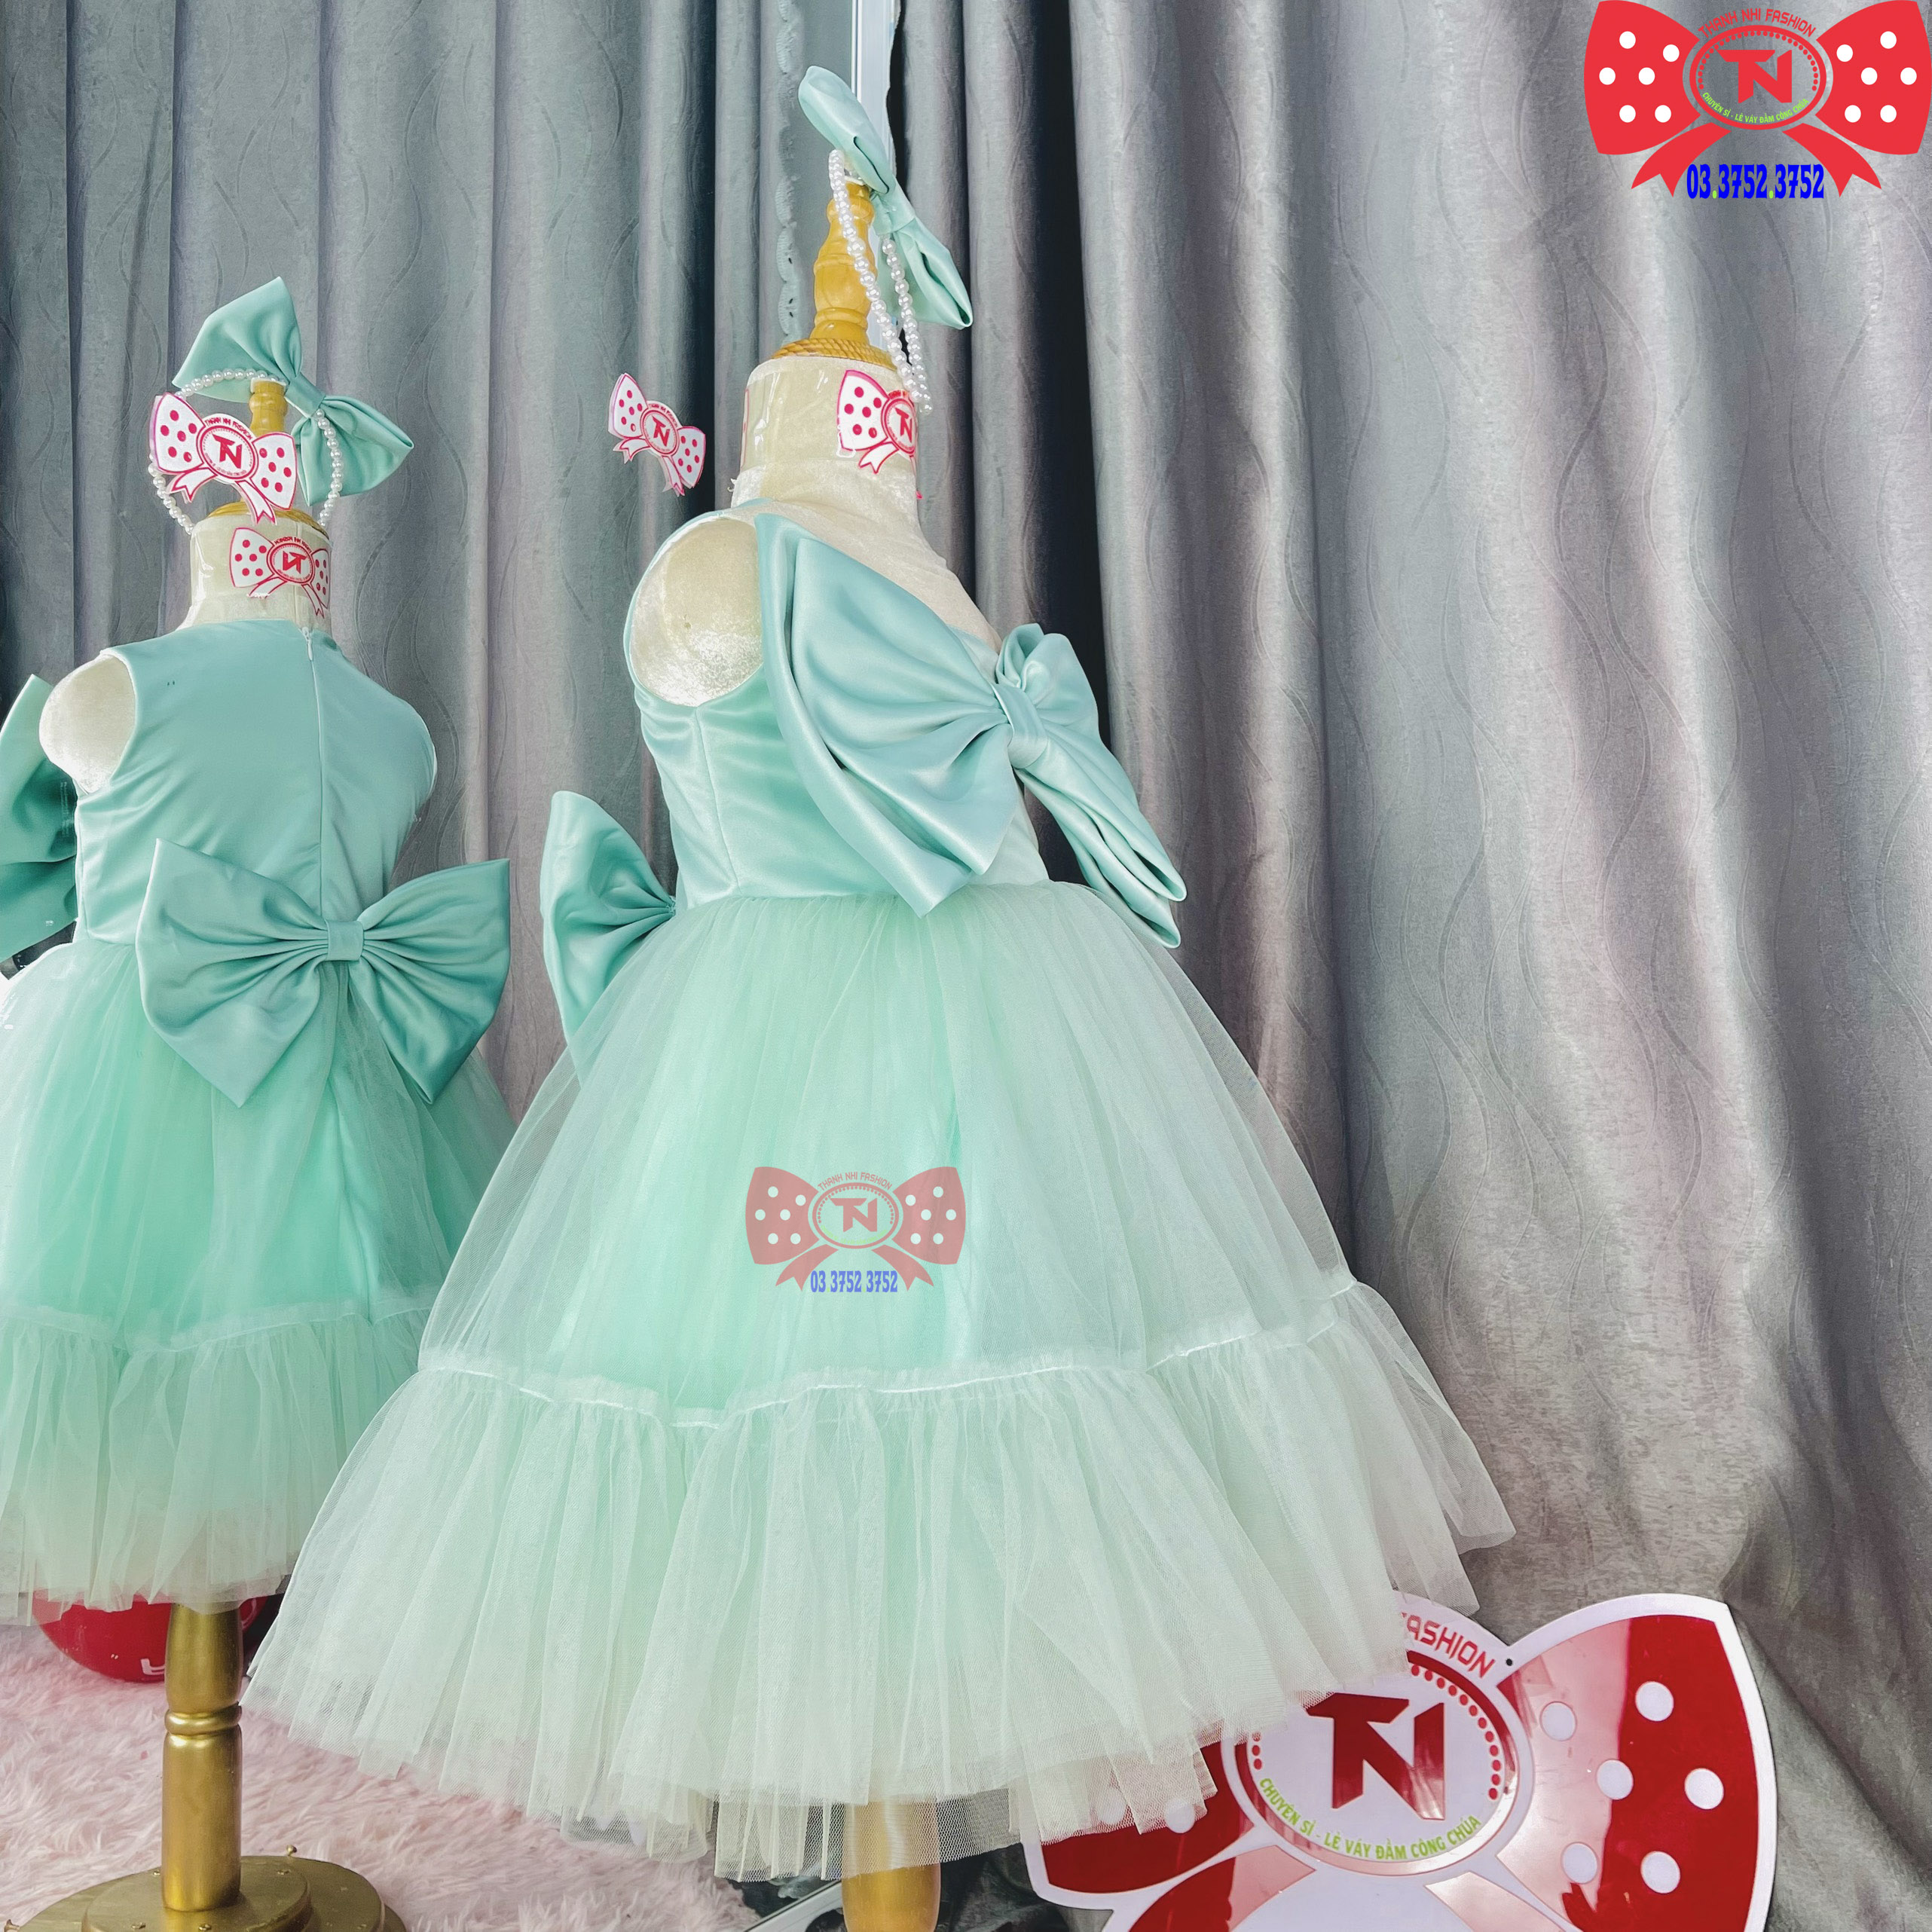 Mua Váy Công Chúa Cho Bé Thời Trang Áo Đầm Cho Bé Mặc Dự Tiệc Sinh Nhật   Tiki